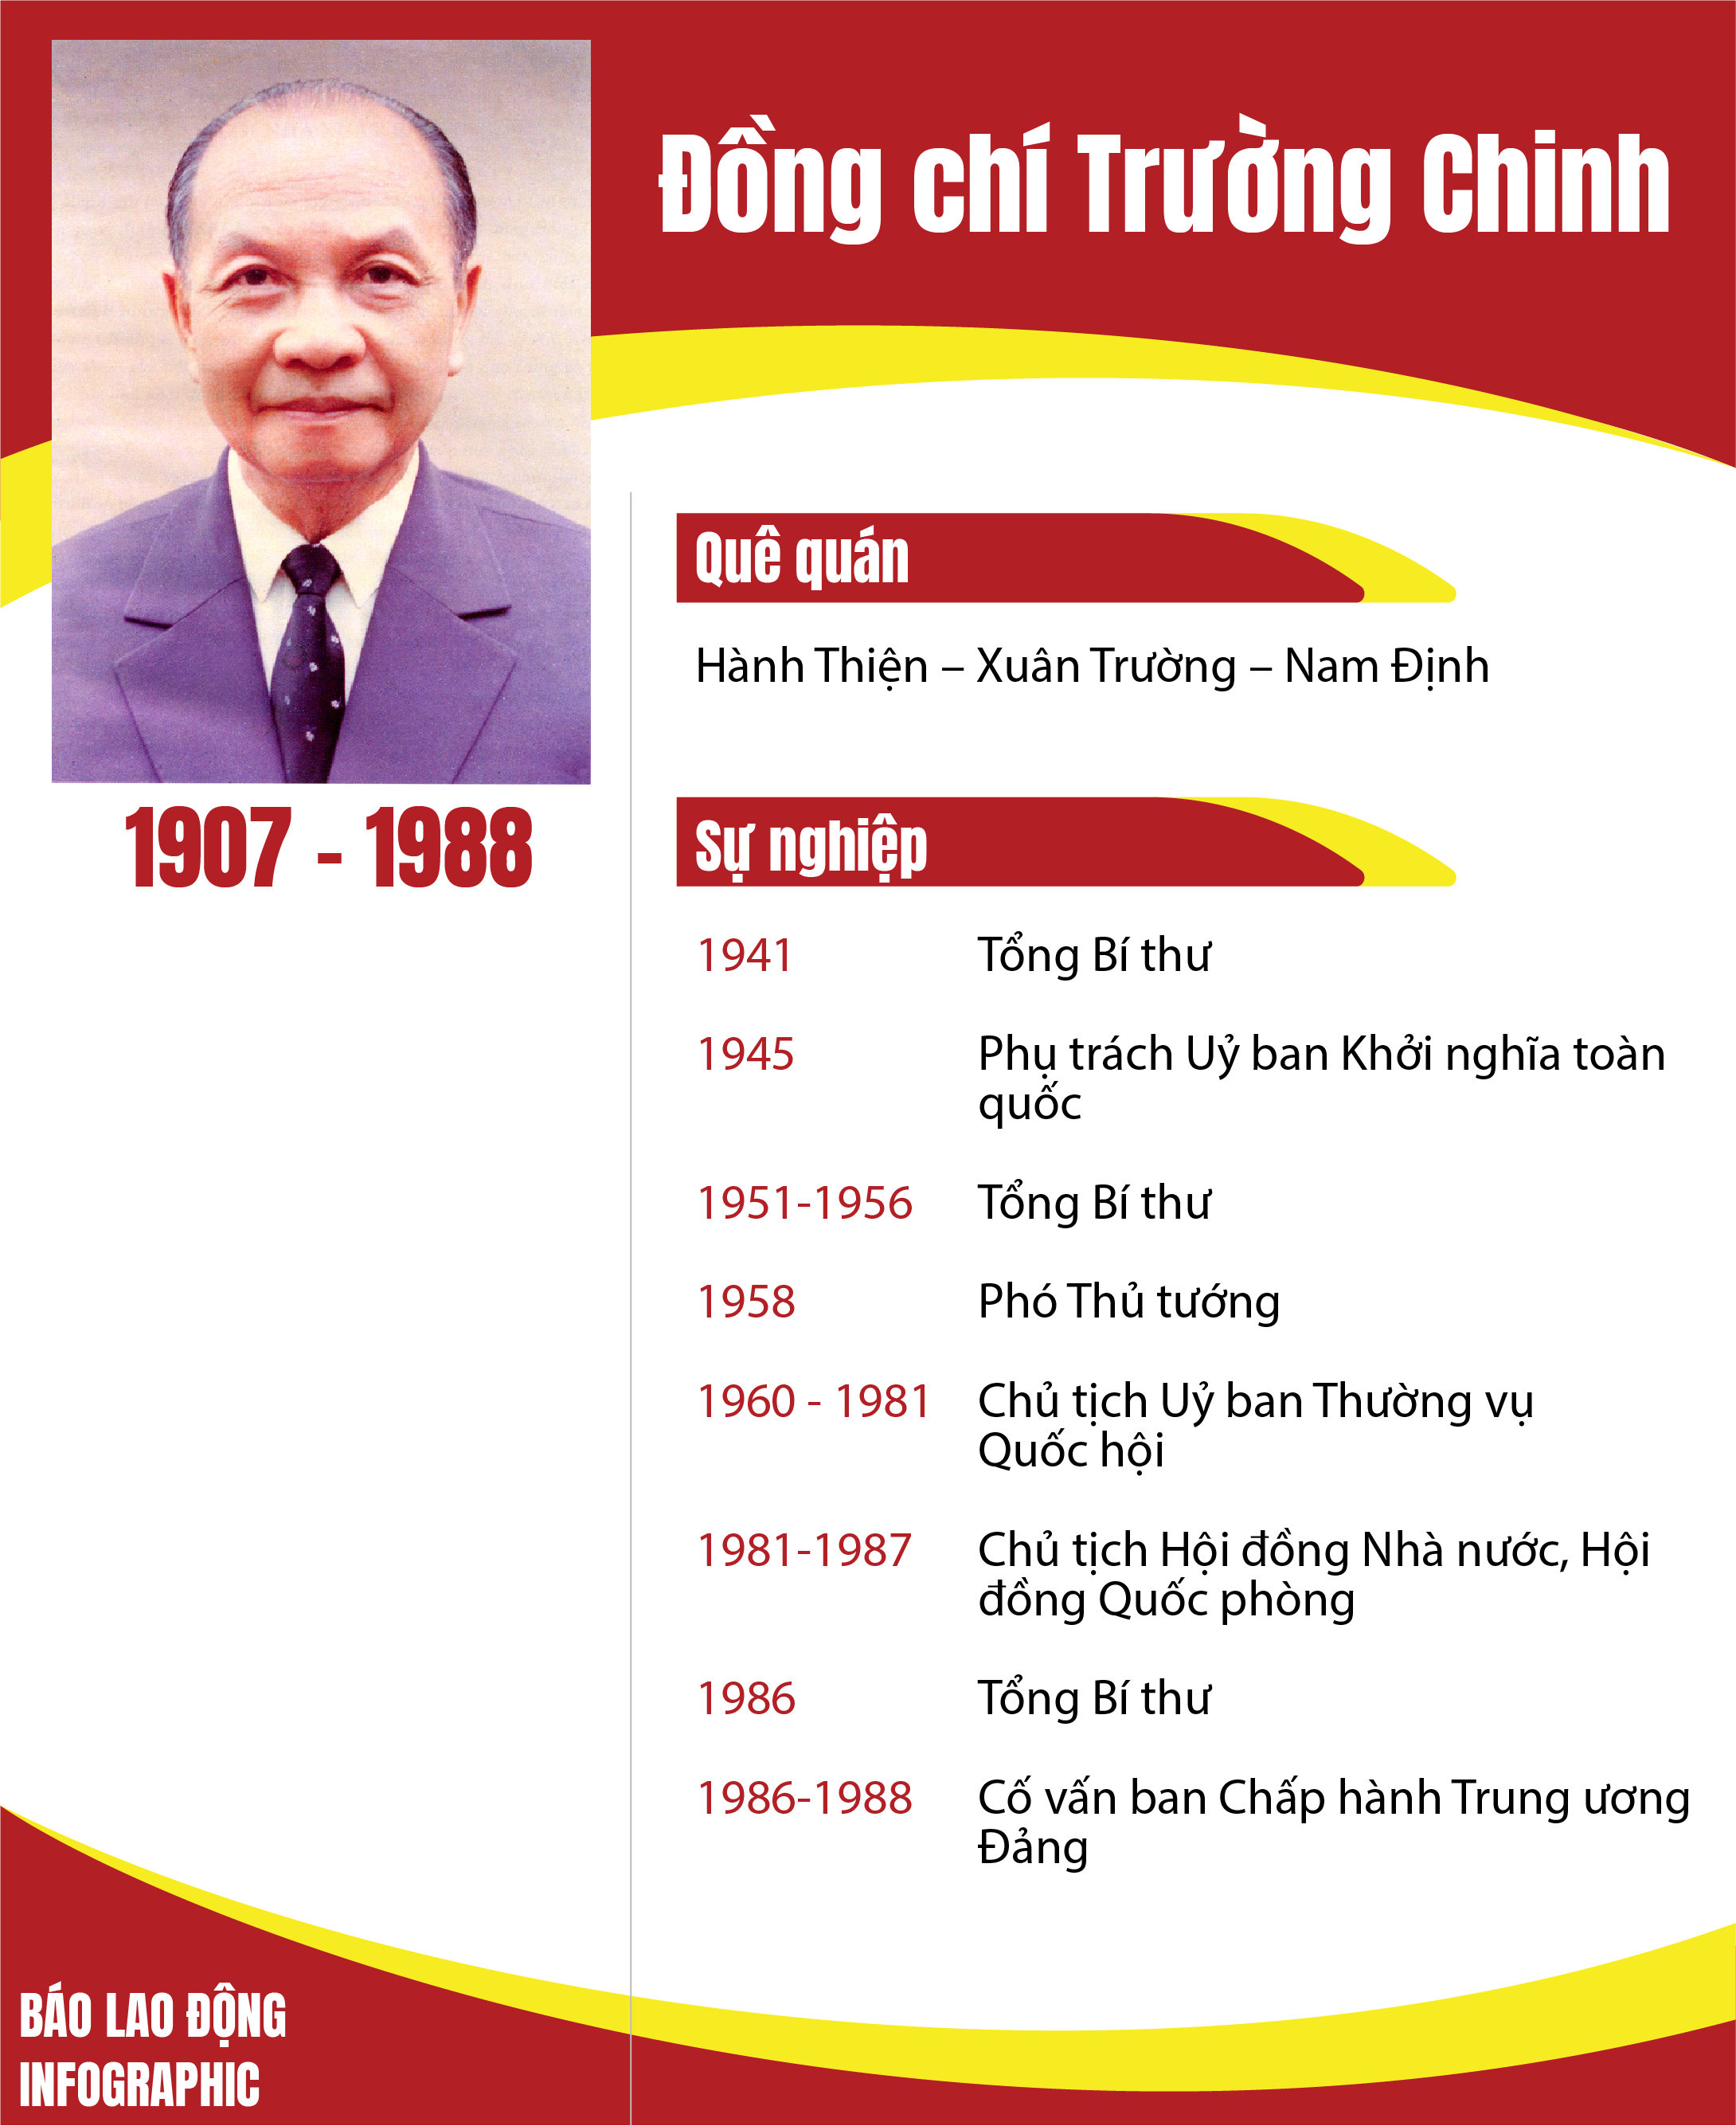 Chủ tịch Nước Việt Nam là người lãnh đạo của đất nước, có vai trò quan trọng trong việc đại diện cho nhân dân và xúc tiến quan hệ đối ngoại. Với những chính sách và quyết định đúng đắn, Chủ tịch Nước đang đóng góp tích cực vào sự phát triển của Việt Nam và đưa đất nước trở thành một trong những nước phát triển nhanh nhất khu vực.